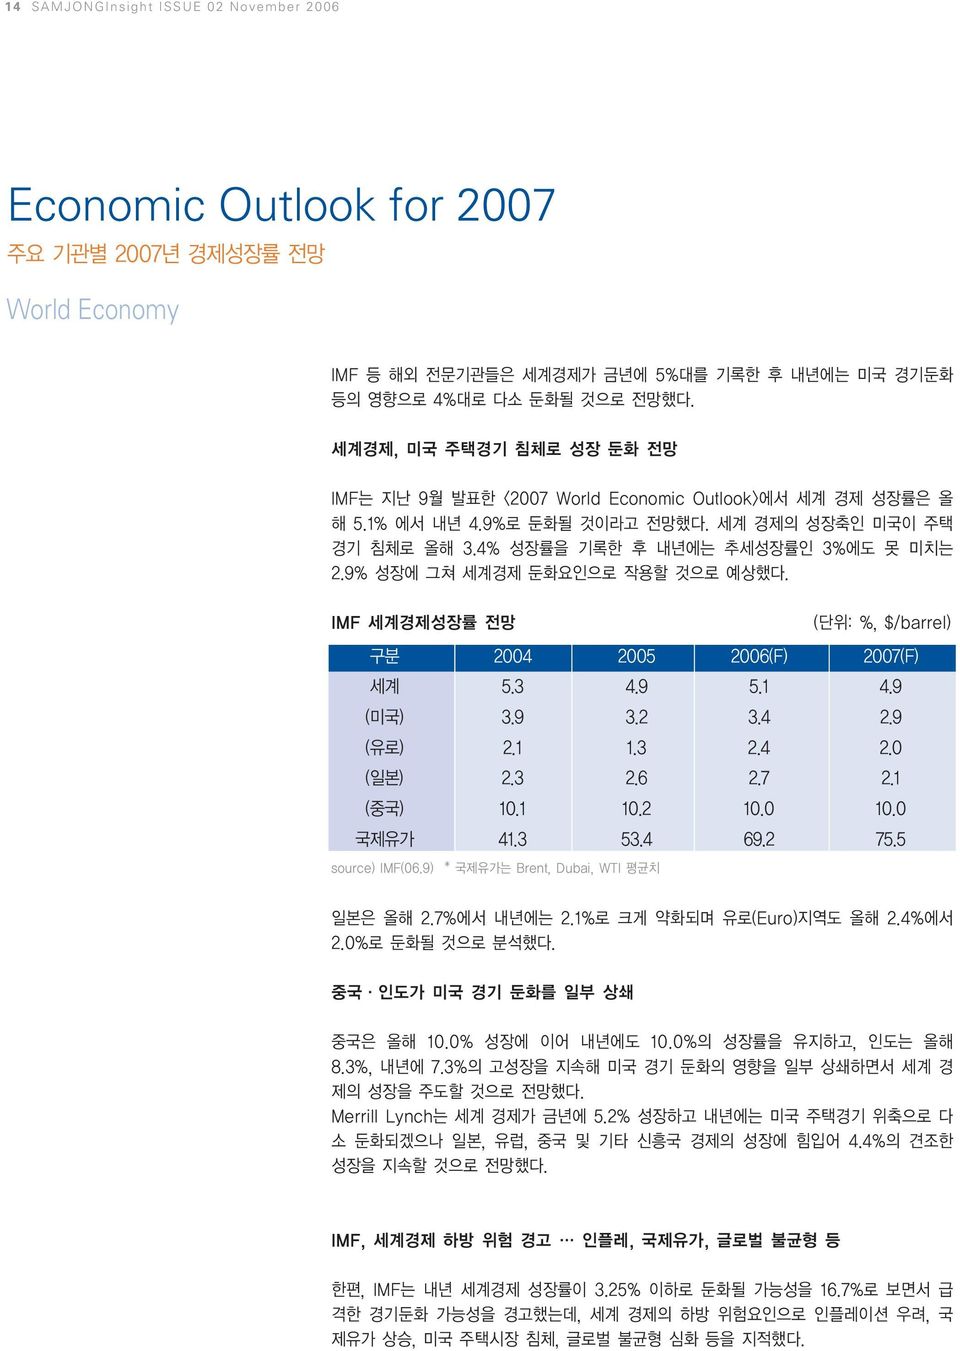 9% 성장에 그쳐 세계경제 둔화요인으로 작용할 것으로 예상했다. IMF 세계경제성장률 전망 (단위: %, $/barrel) 구분 2004 2005 2006(F) 2007(F) 세계 5.3 4.9 5.1 4.9 (미국) 3.9 3.2 3.4 2.9 (유로) 2.1 1.3 2.4 2.0 (일본) 2.3 2.6 2.7 2.1 (중국) 10.1 10.2 10.